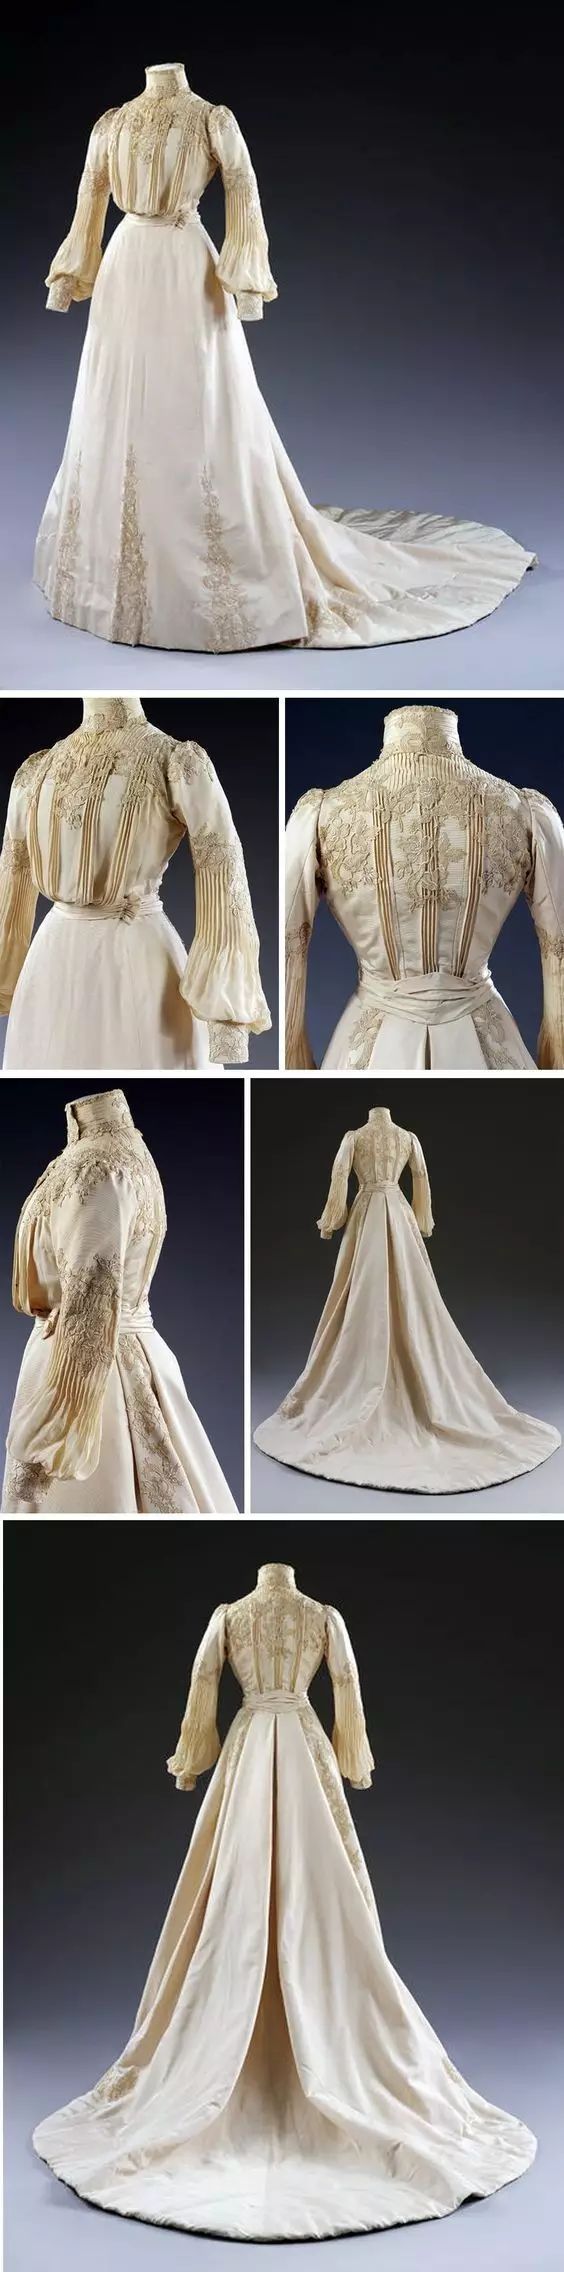 两件式丝绸婚纱 / 1902年 / 伦敦维多利亚与阿尔伯特博物馆收藏